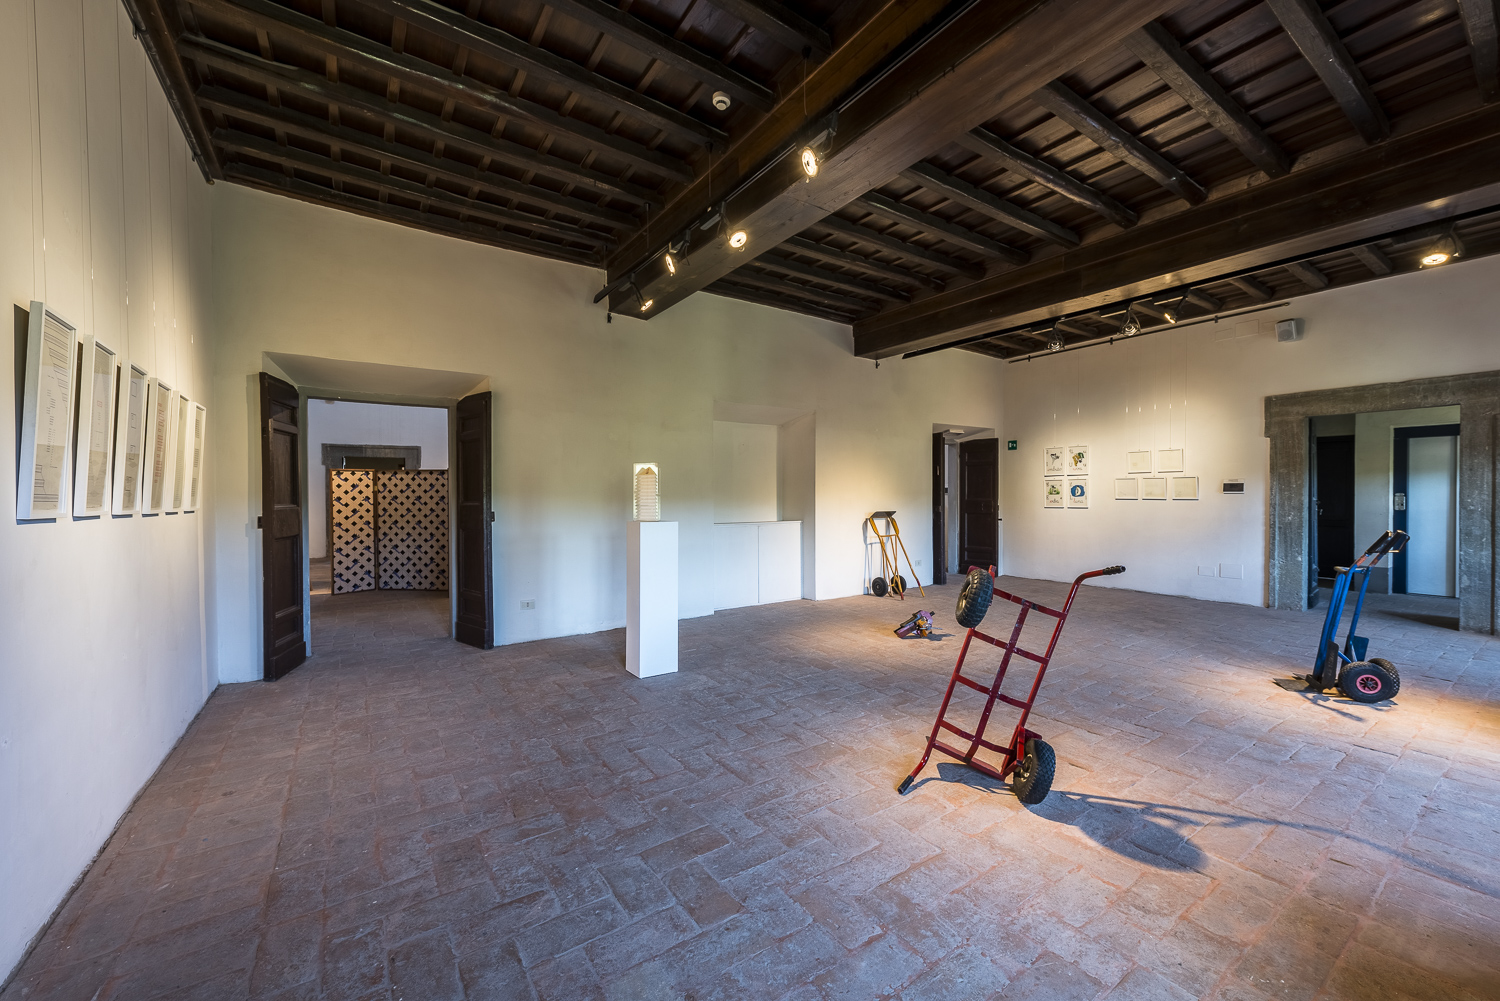 Granpalazzo 2017, Installation View Daniel Marzona/Sofia Hulten e Tiziana Di Caro/Tomaso Binga ph Sebastiano Luciano photography